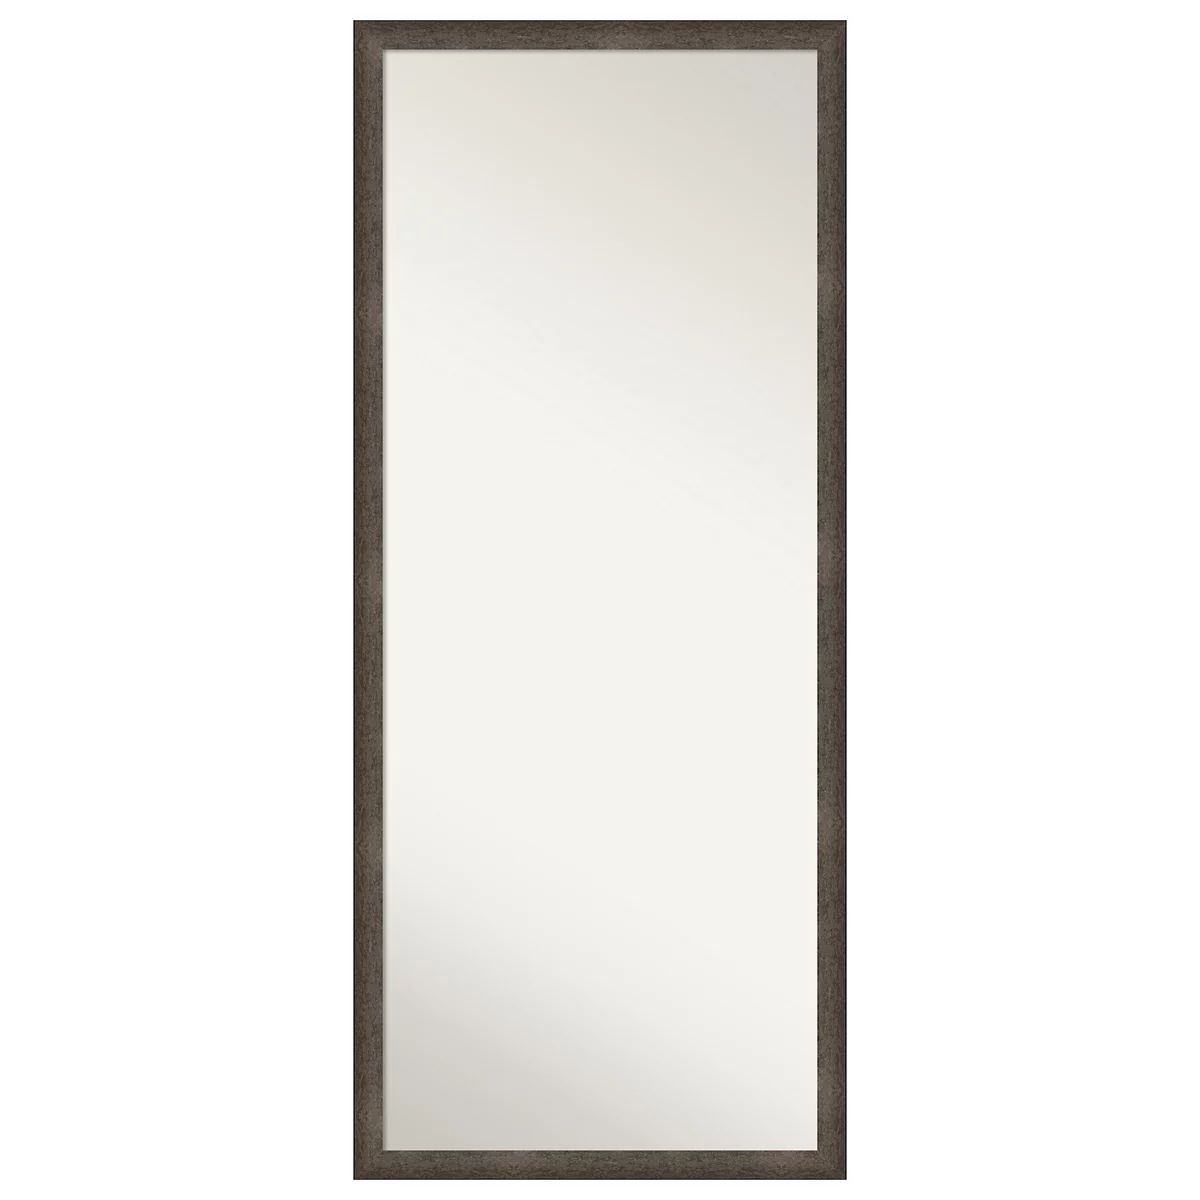 Dappled Narrow Wood Non Beveled Full Length Floor Leaner Mirror | Kohl's